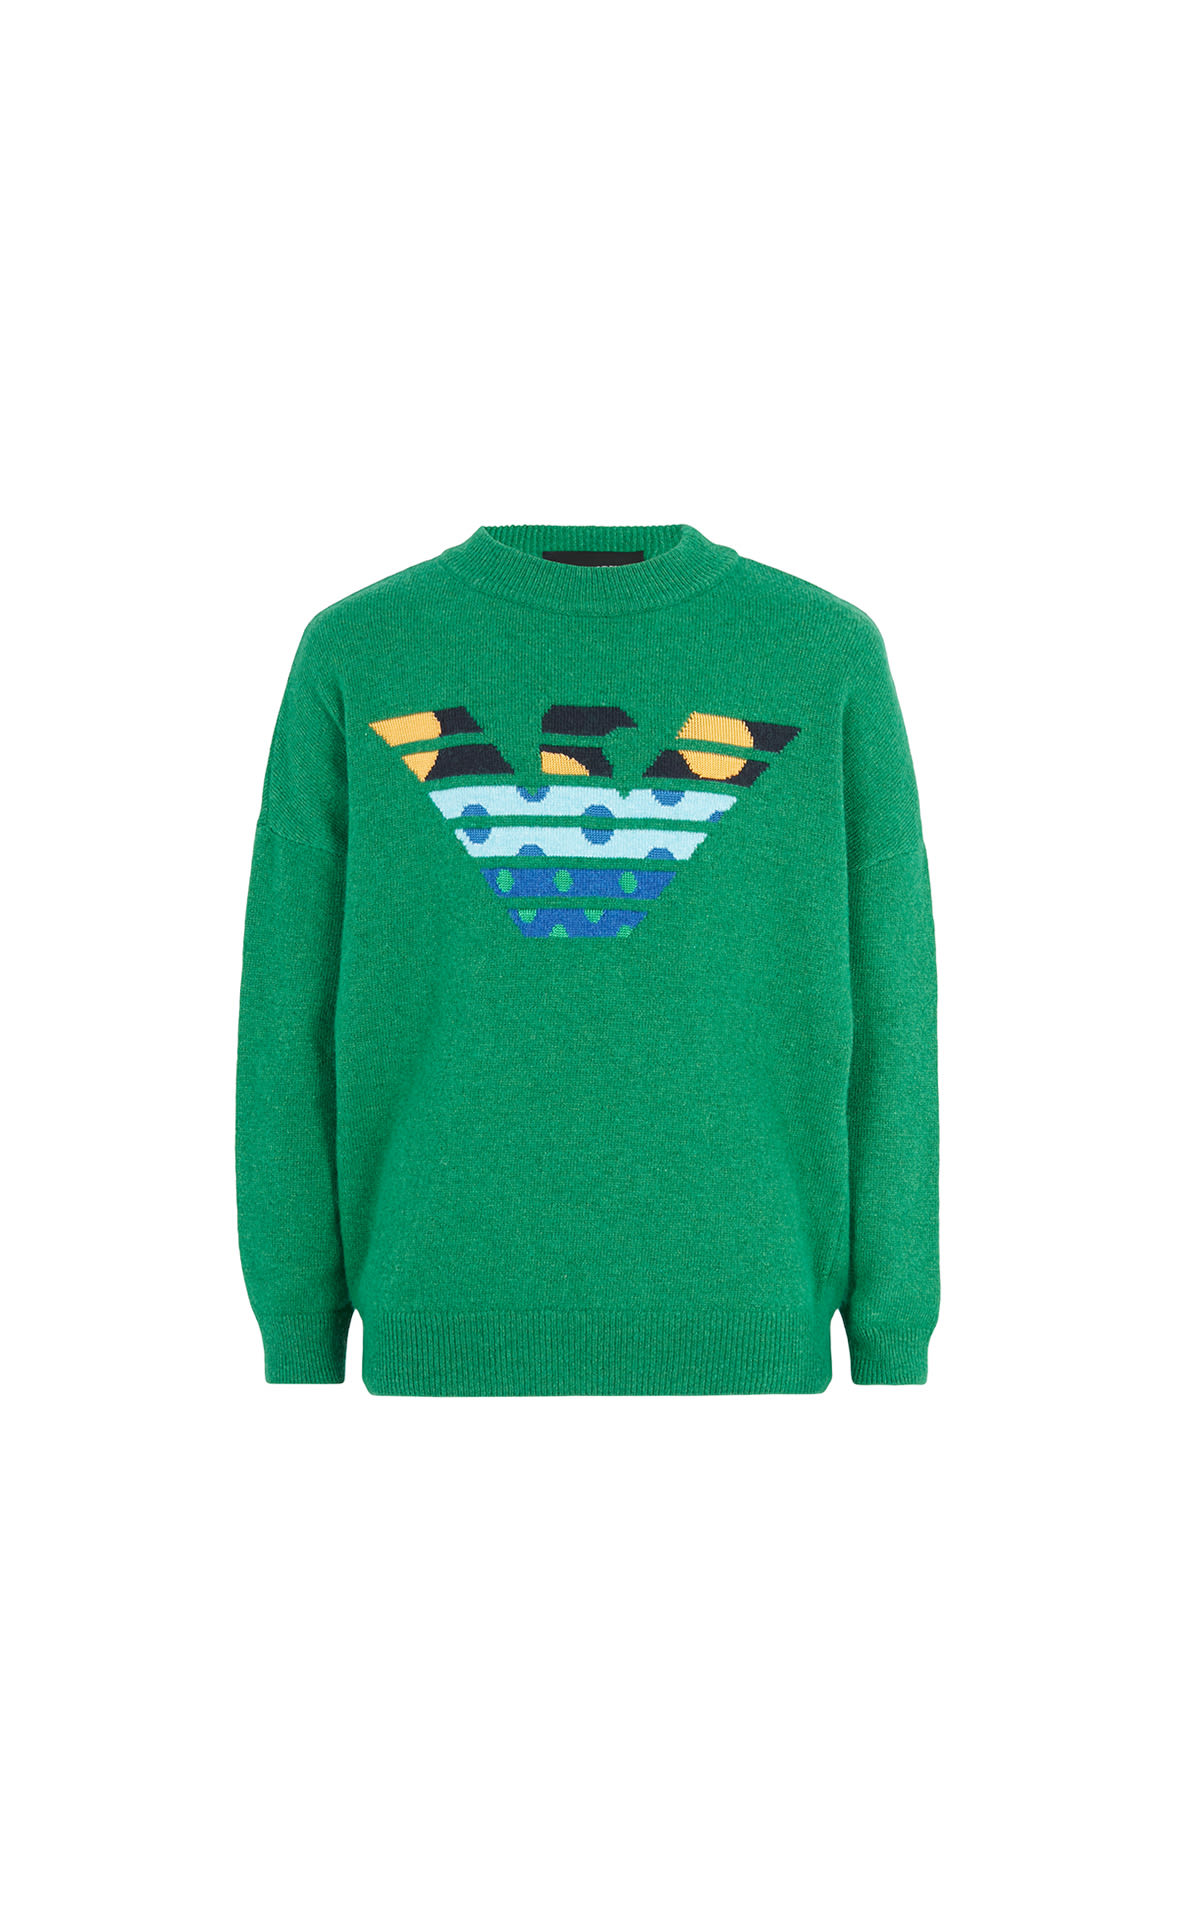 Armani Green sweater